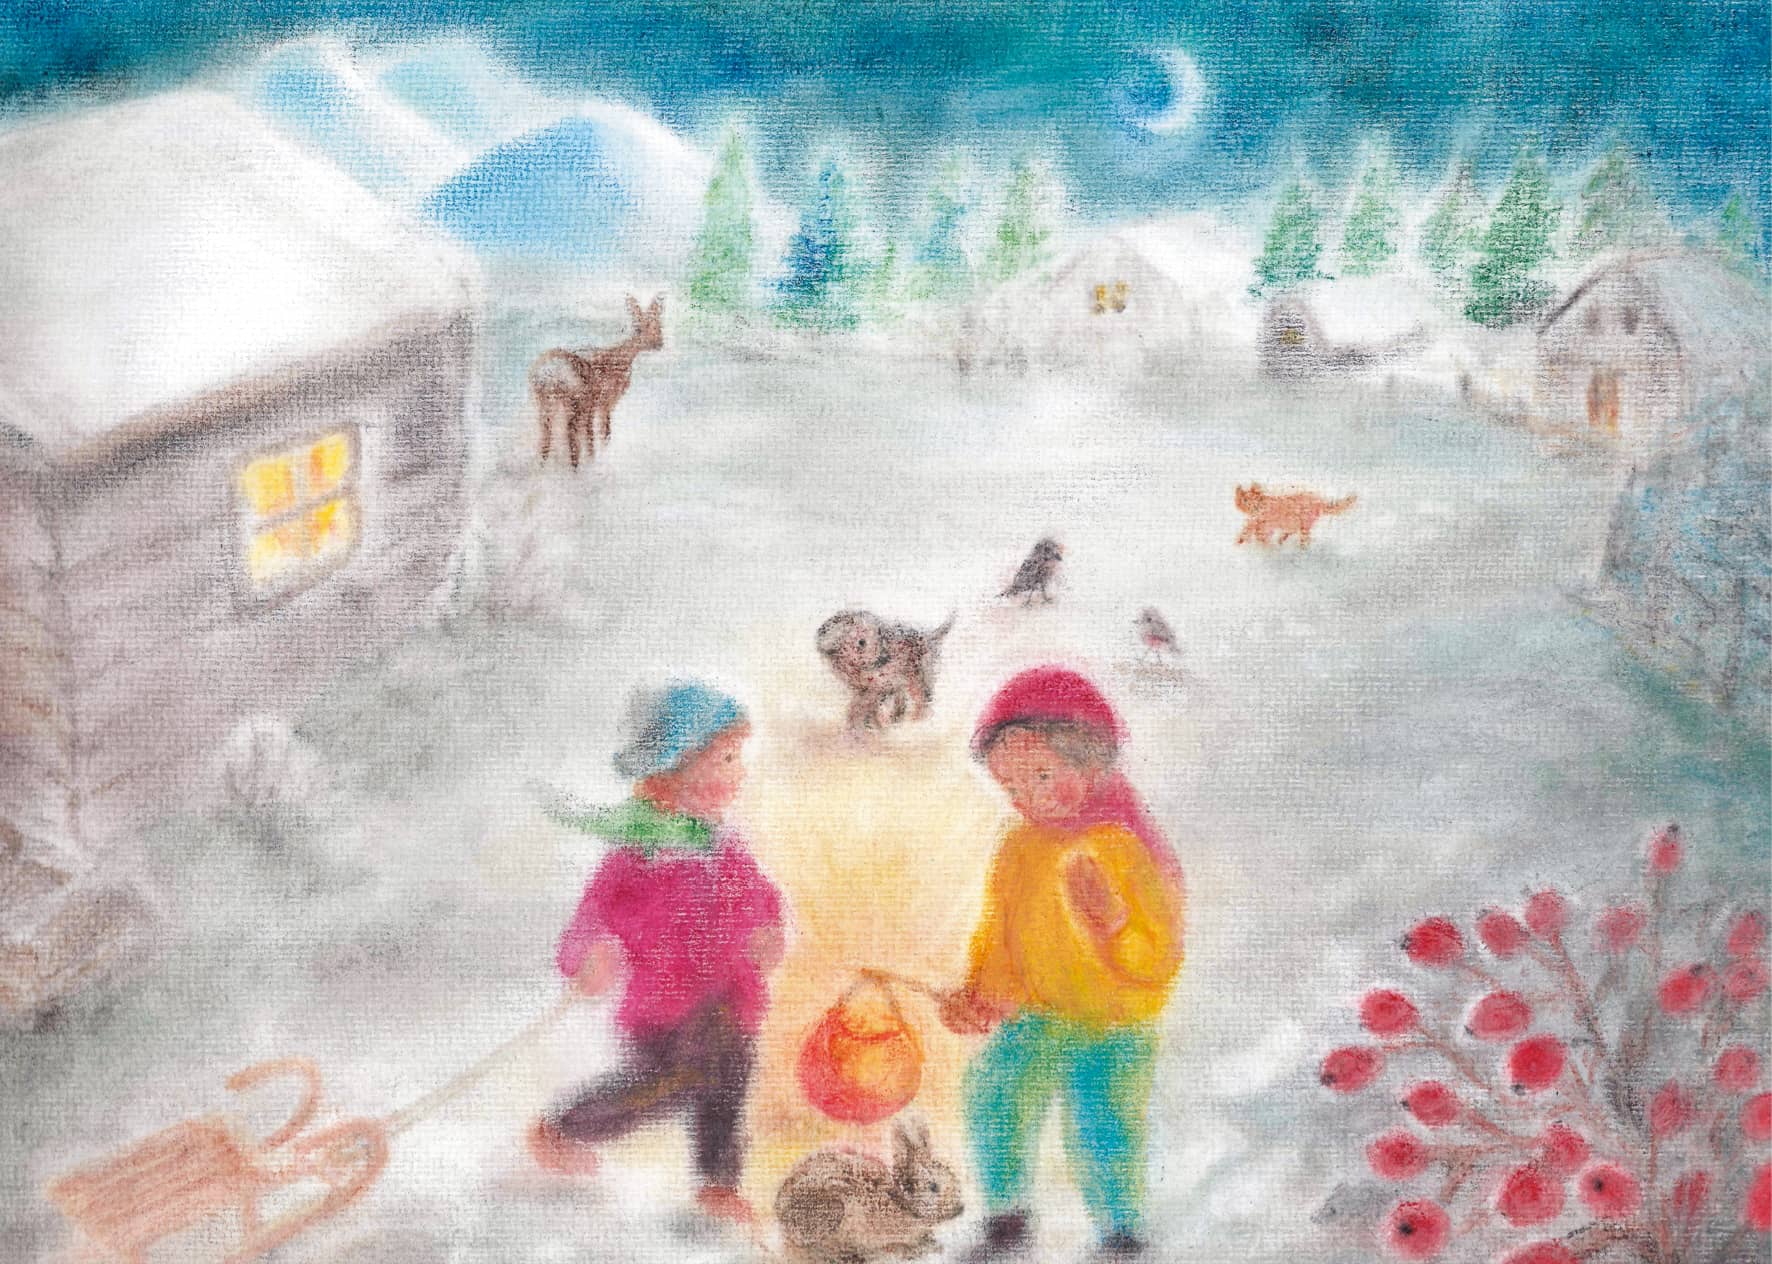 Seccorell-Postkarte "Kinder im Schnee" zeigt spielende Kinder mit Laterne in einer verschneiten Winterlandschaft bei Mondlicht.